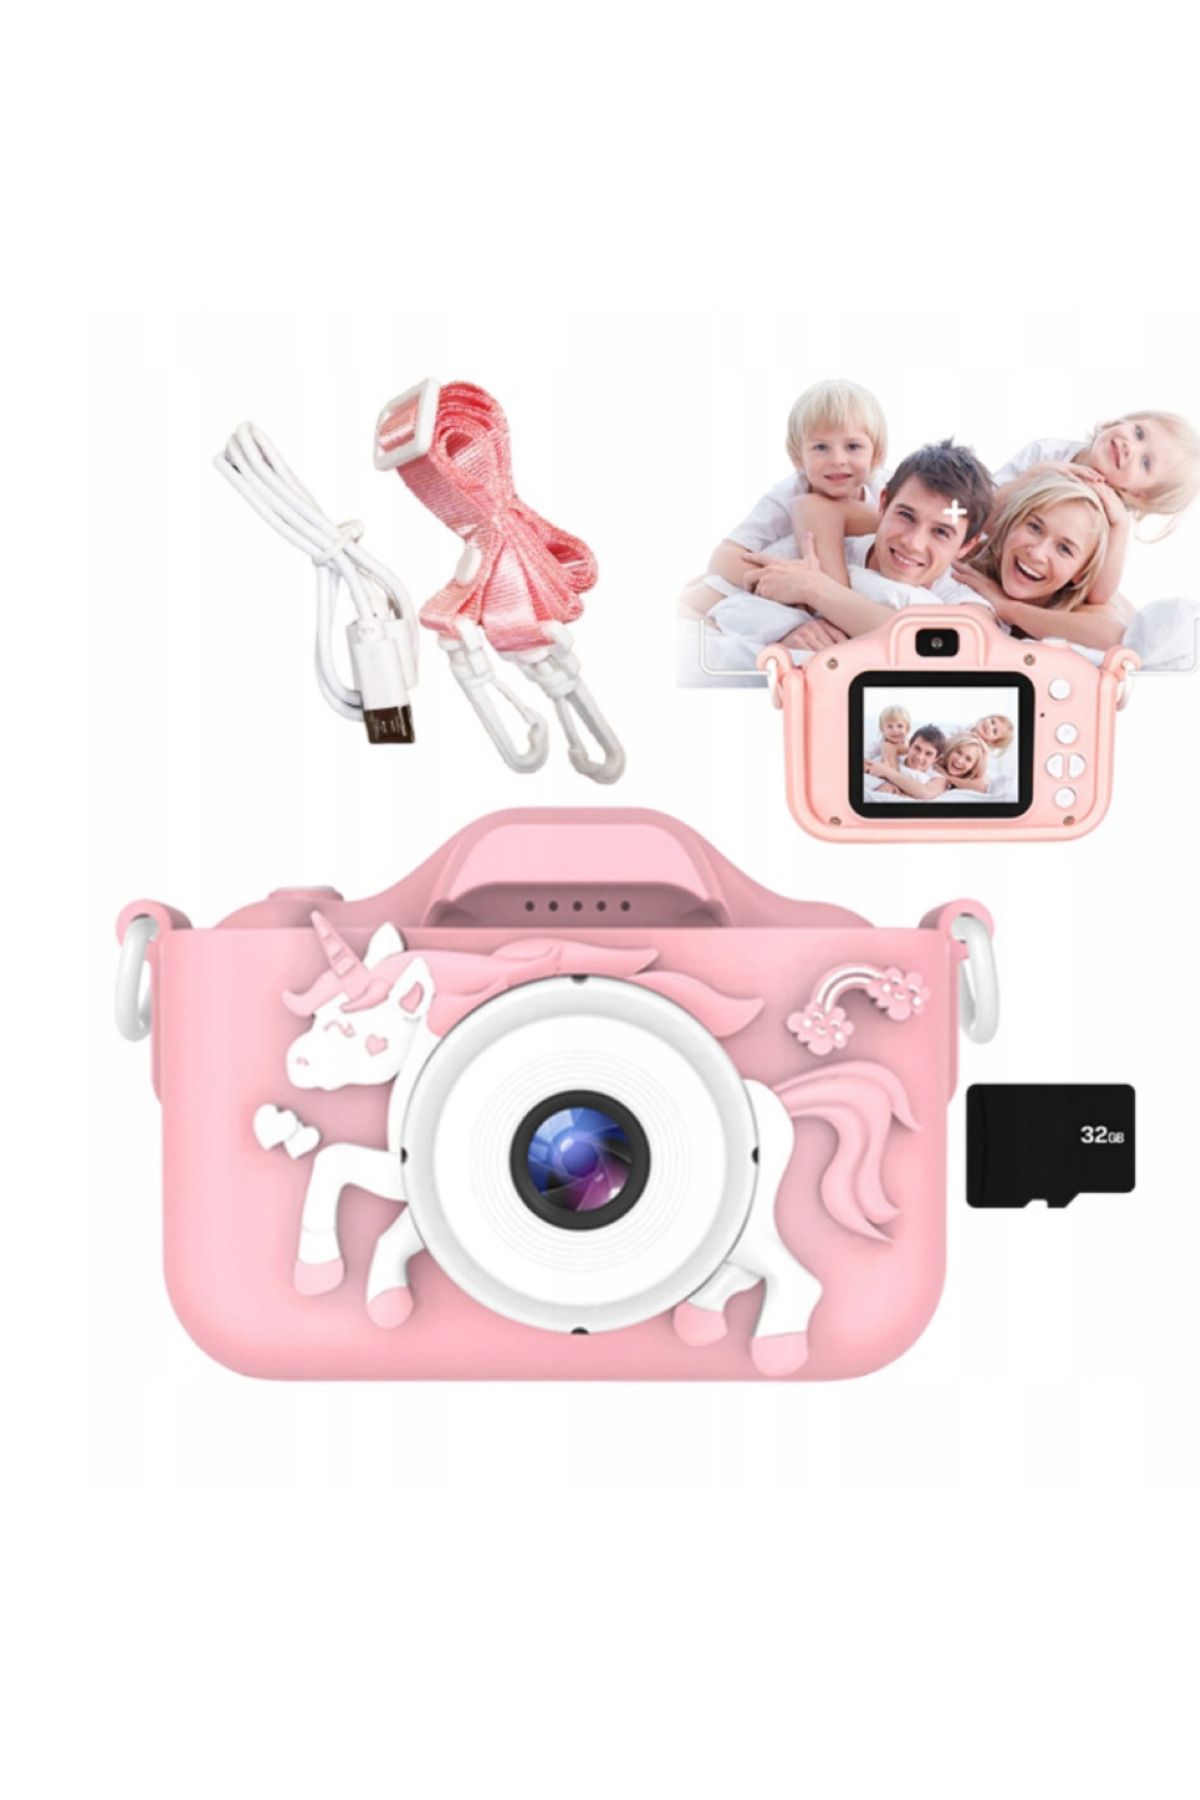 AteşTech Çocuk Fotoğraf Makinesi 2inç Kılıflı Hd Dijital Selfie Kamera 32gb Hafıza Kartı